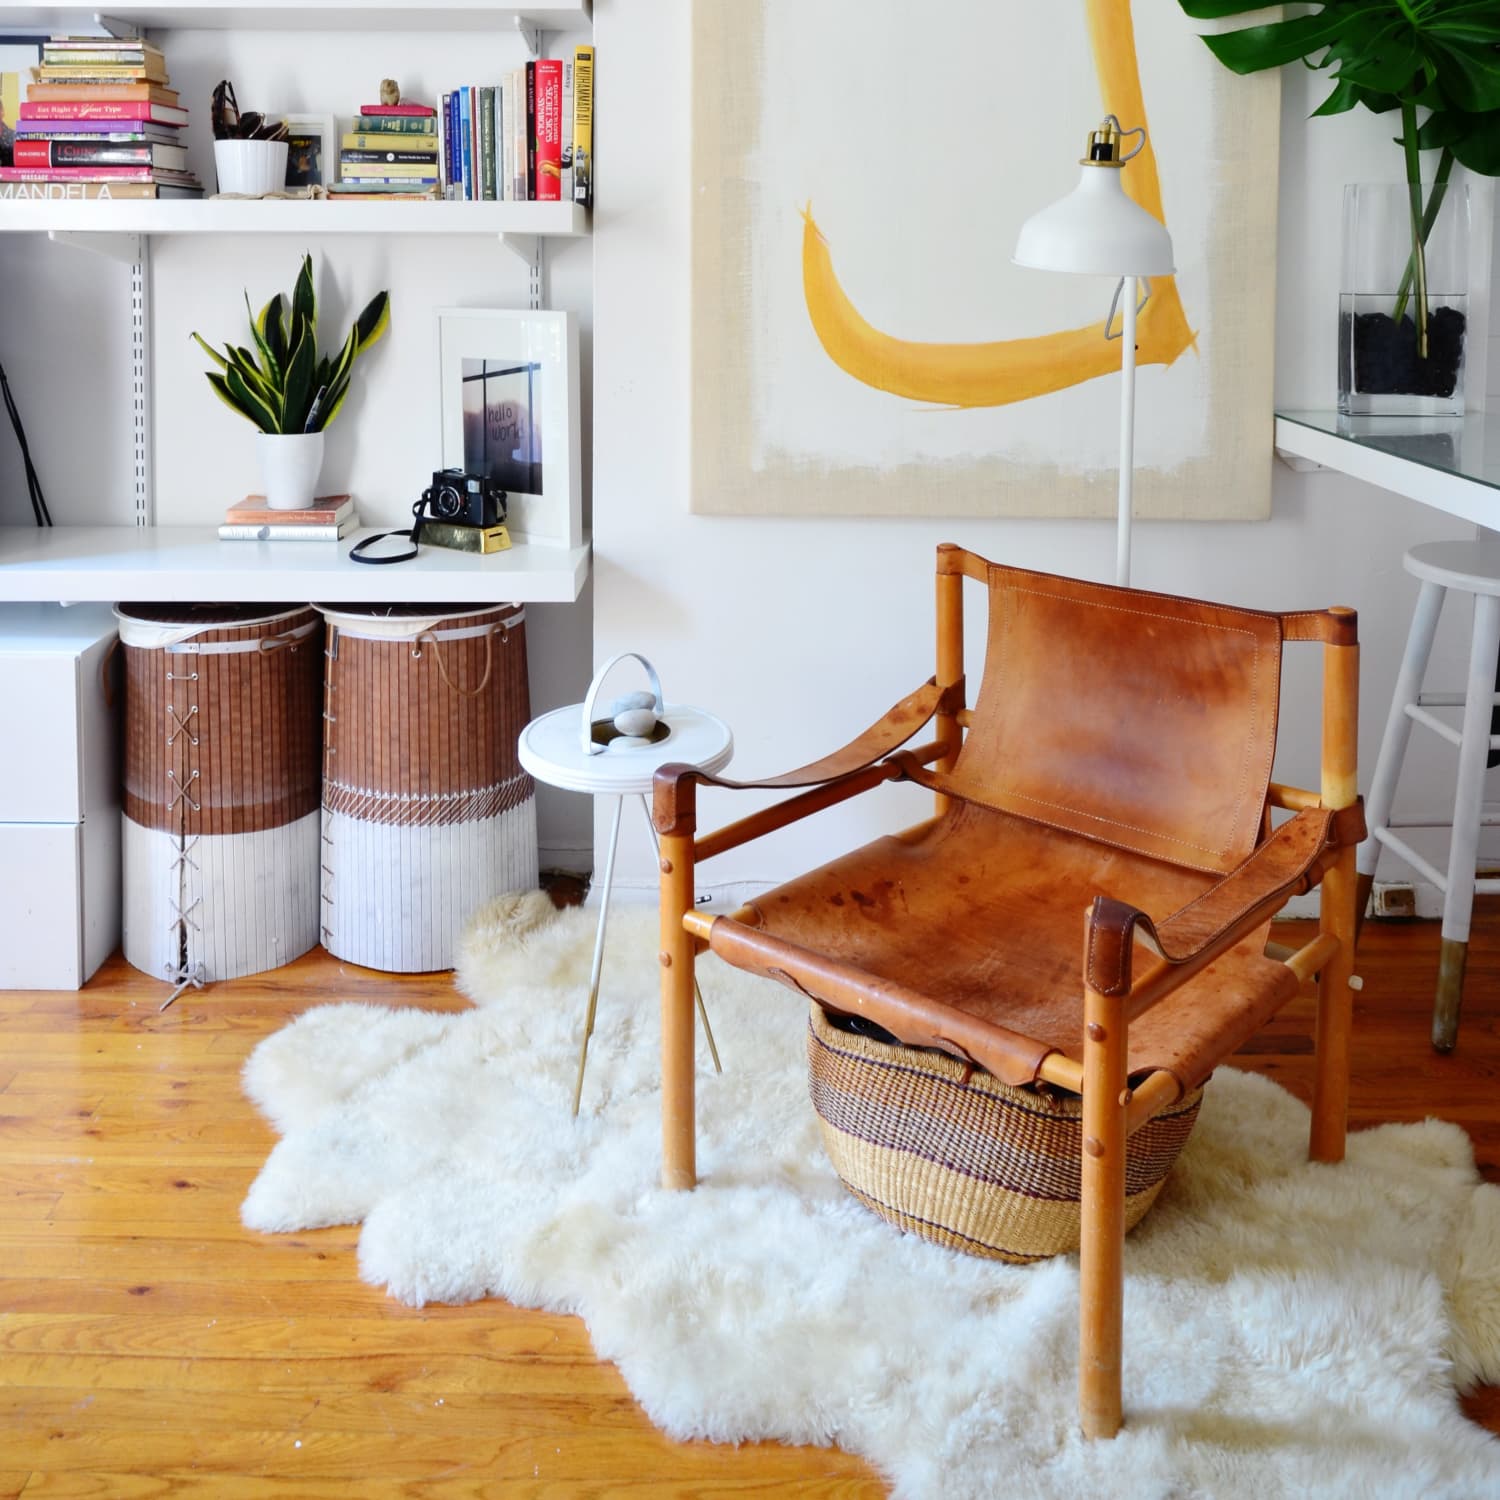 9 Smart Design Ideas For Your Studio Apartment Apartment Therapy,Danish Interior Design Pastel